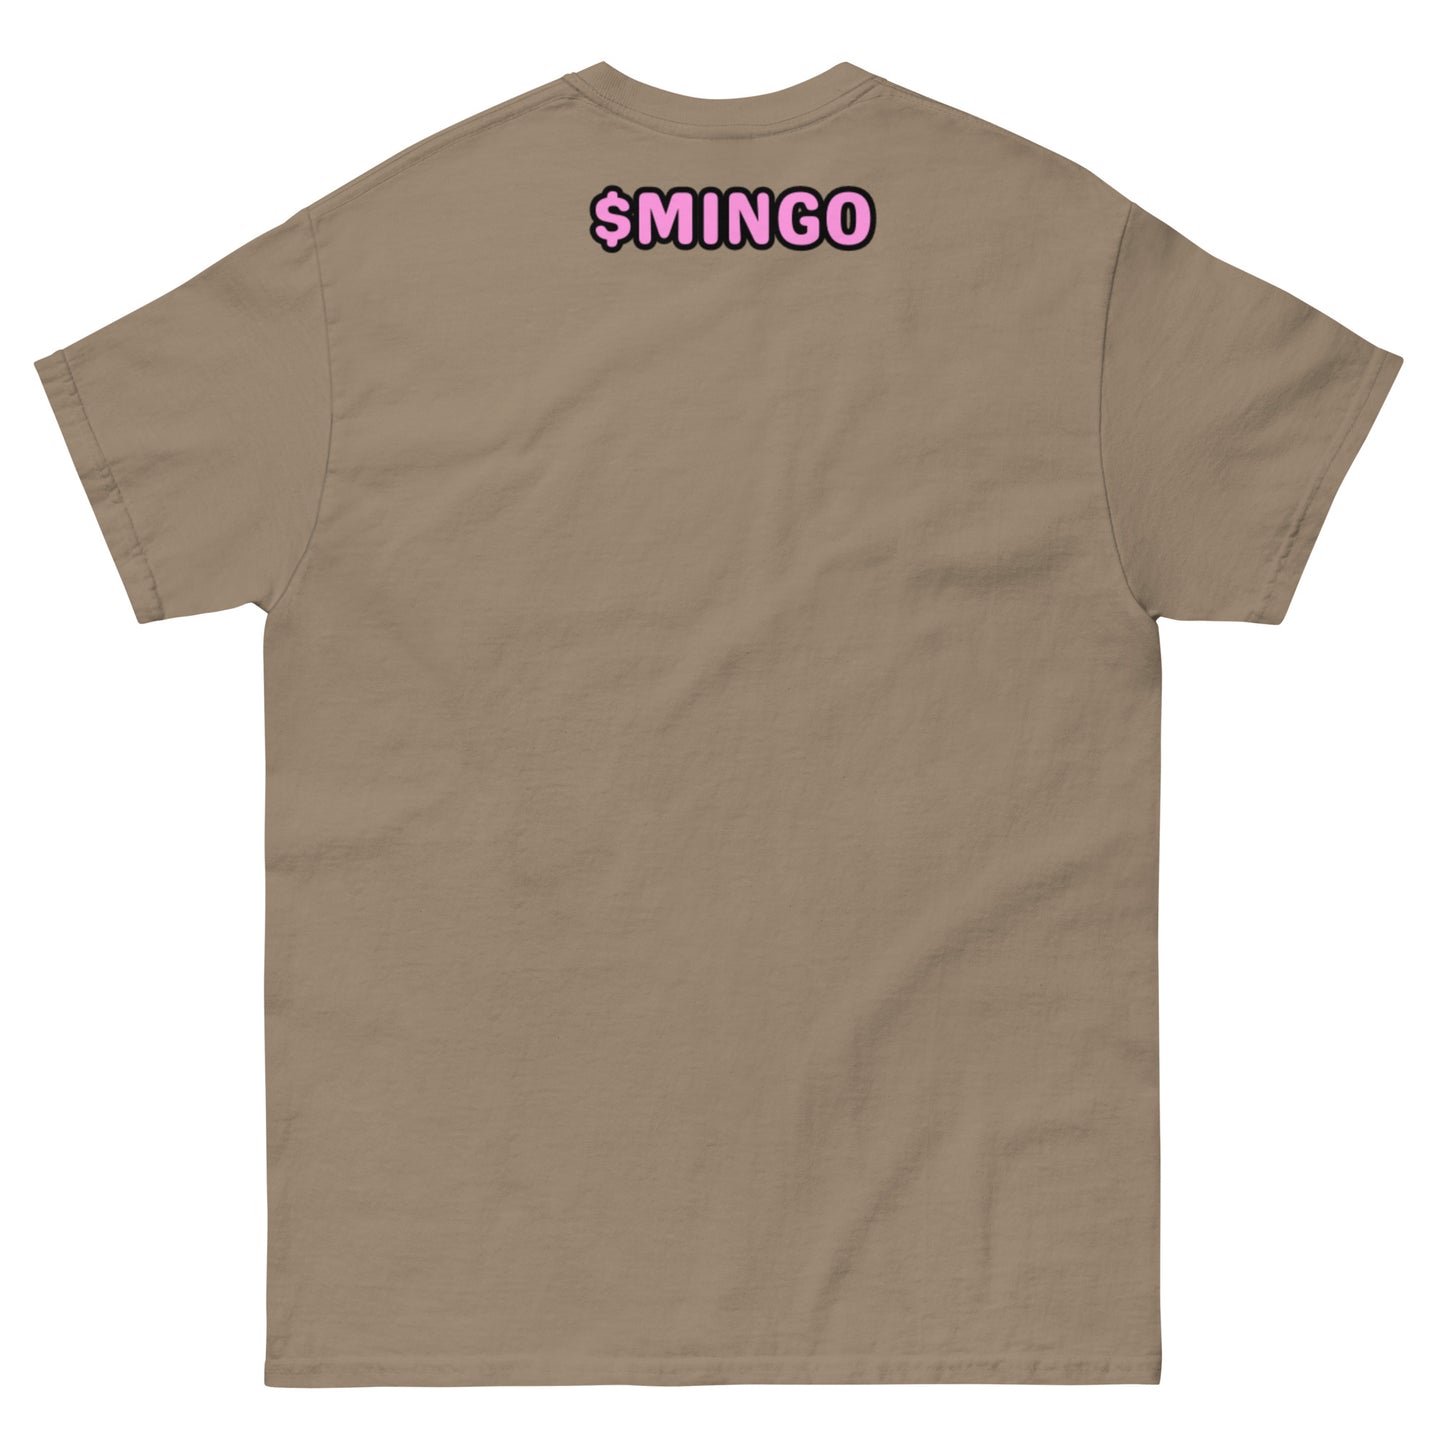 Classic $MINGO t-shirt